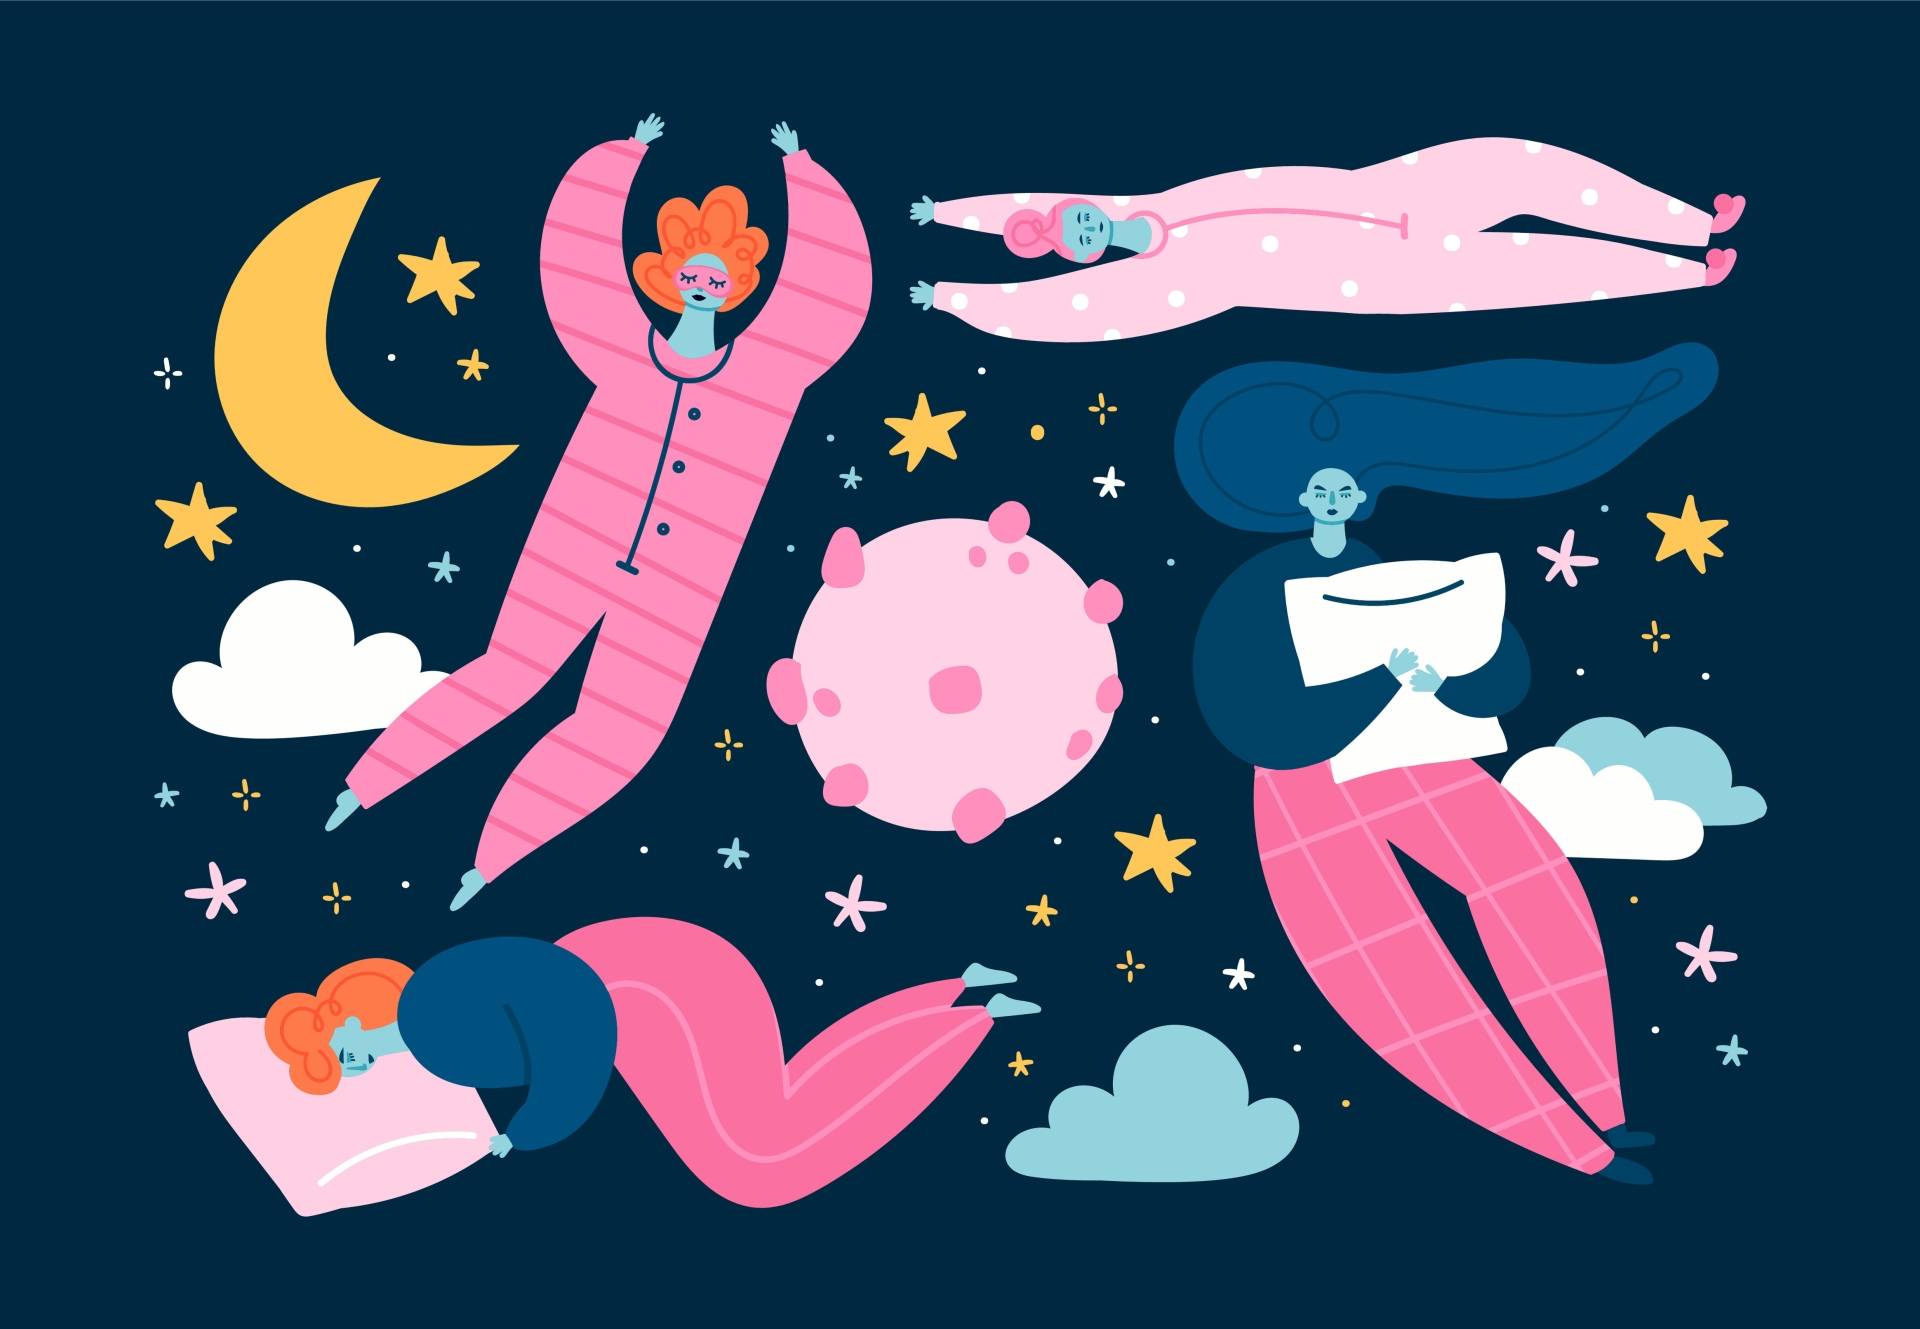 Fazy snu - jak przebiega zdrowy sen? Grafika przedstawiające śpiące kobiety w różnych pozycjach.